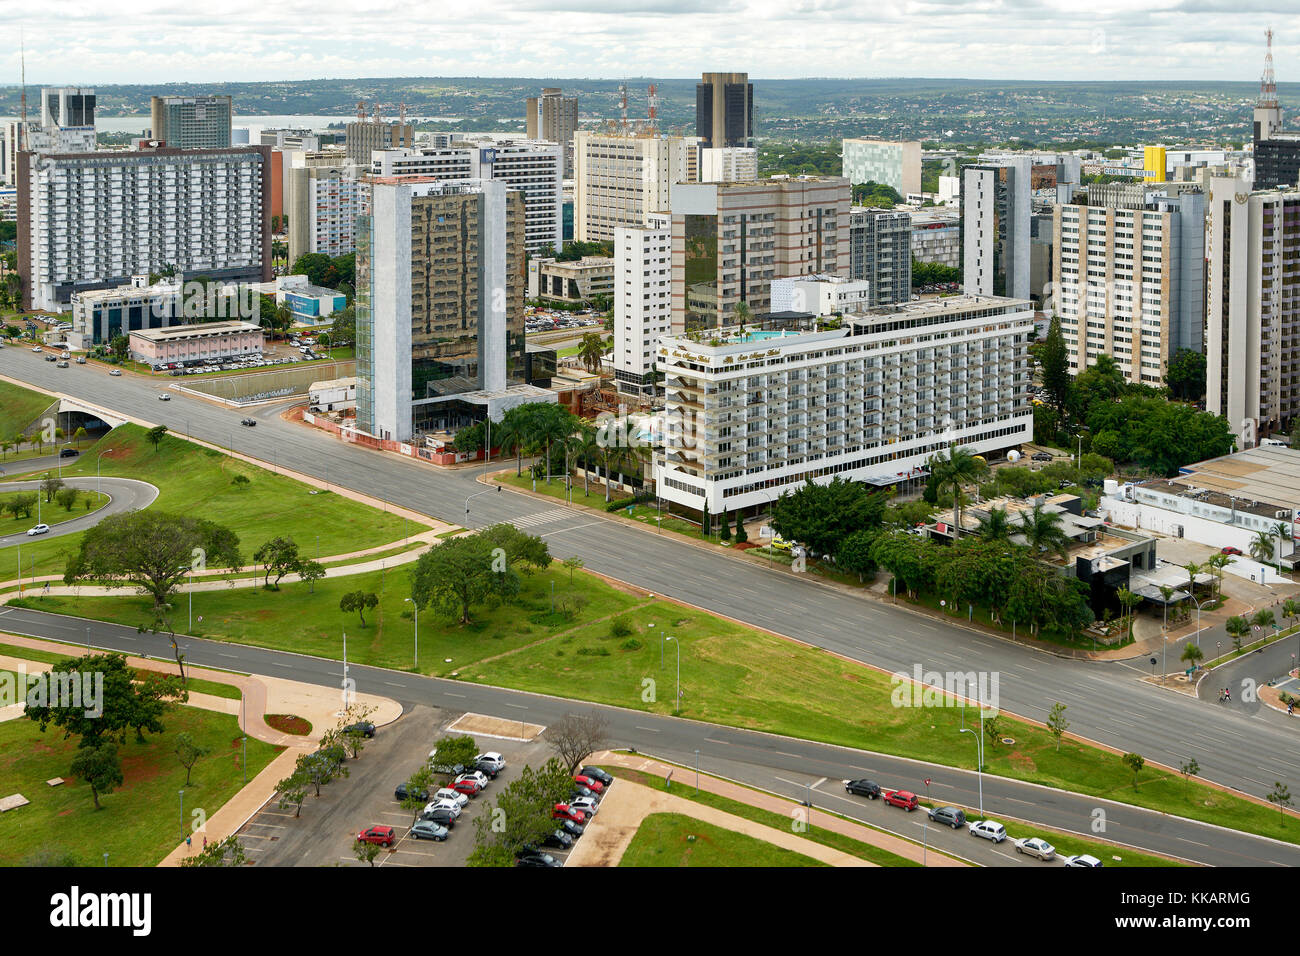 Vista del settore alberghiero a sud di Brasilia, la capitale federale del Brasile e sede del governo del Distretto Federale, Brasilia, Brasile Foto Stock